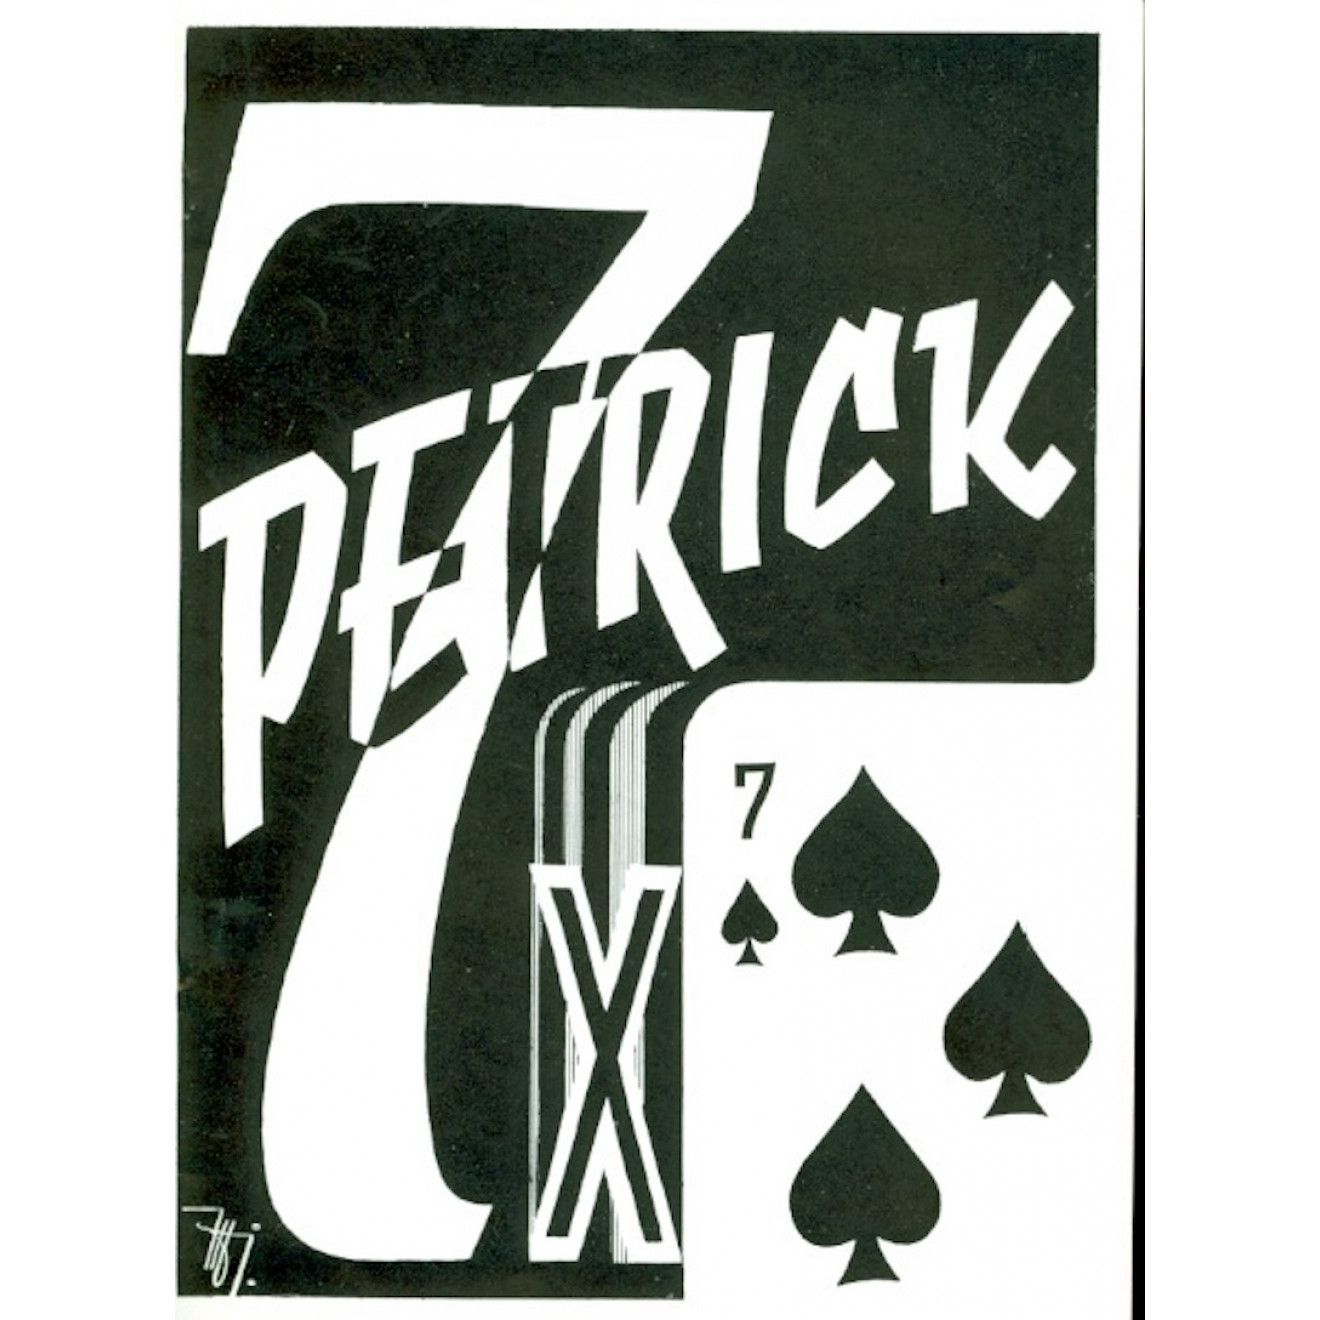 7 x Petrick (Pik 7)